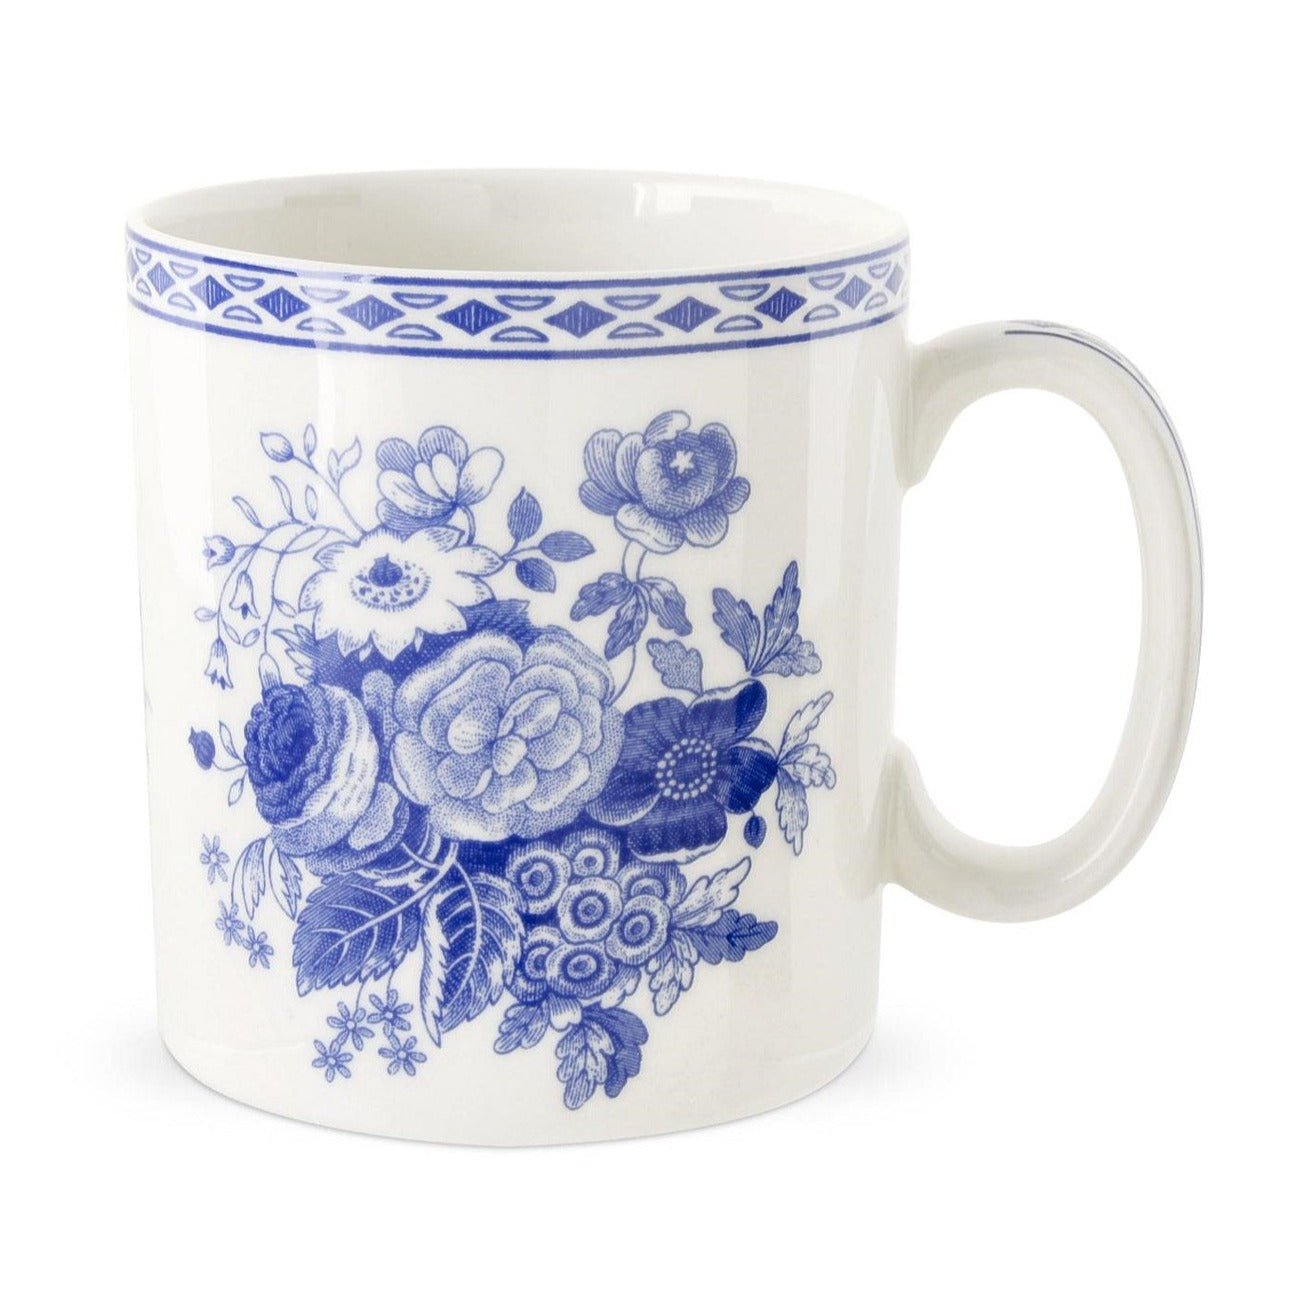 Spode Blue Room Blue Rose Mug